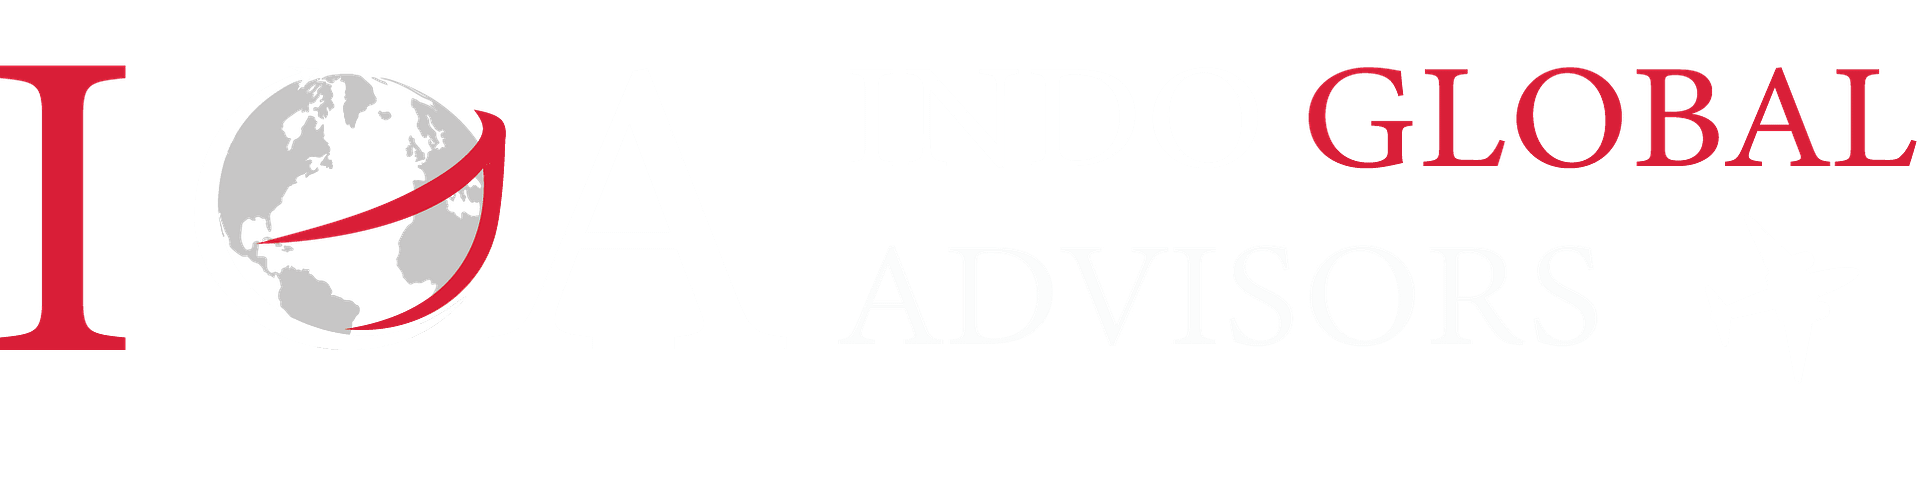 IGA Logo 1